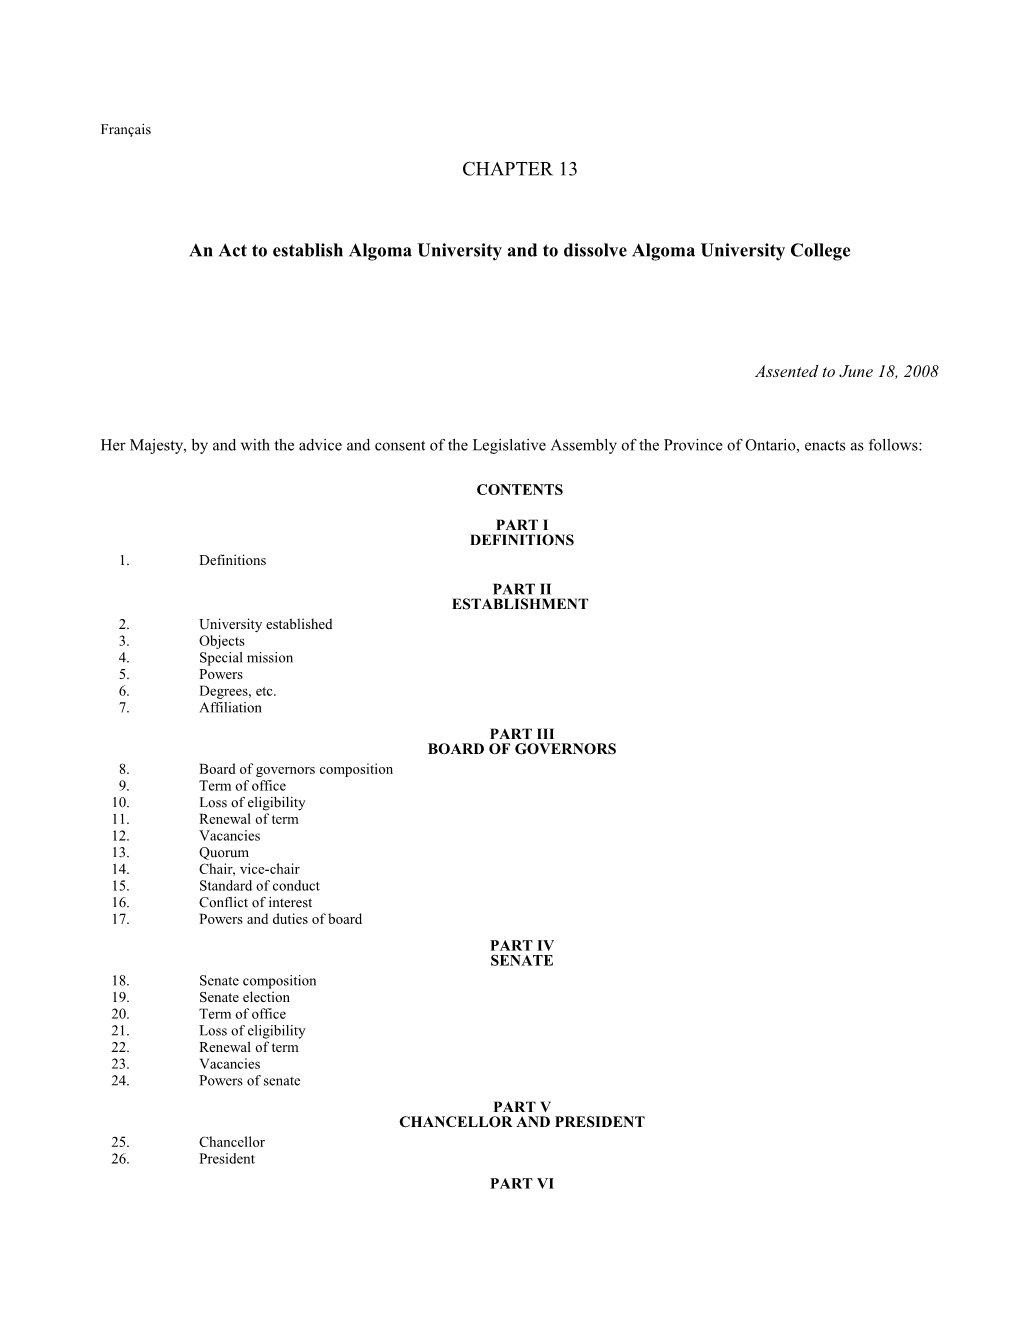 Algoma University Act, 2008, S.O. 2008, C. 13 - Bill 80